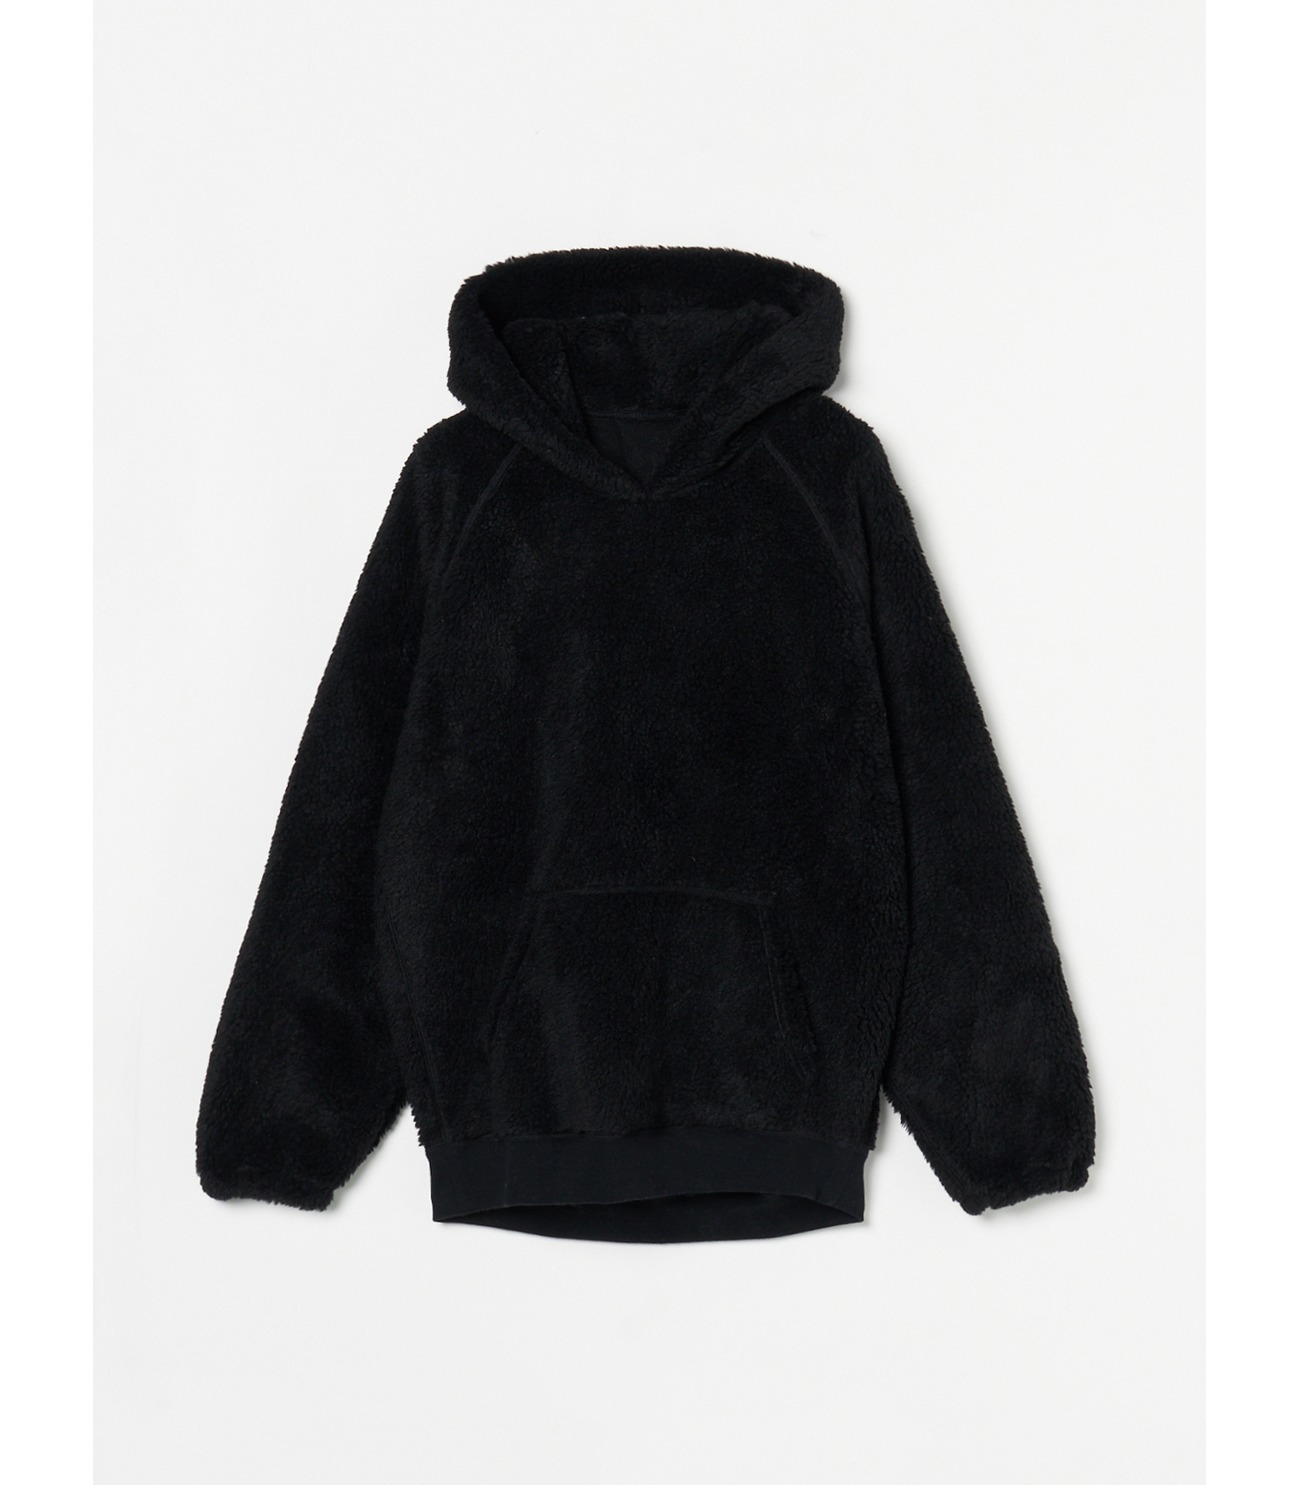 Fleece boa l/s hoody pullover 詳細画像 black 2